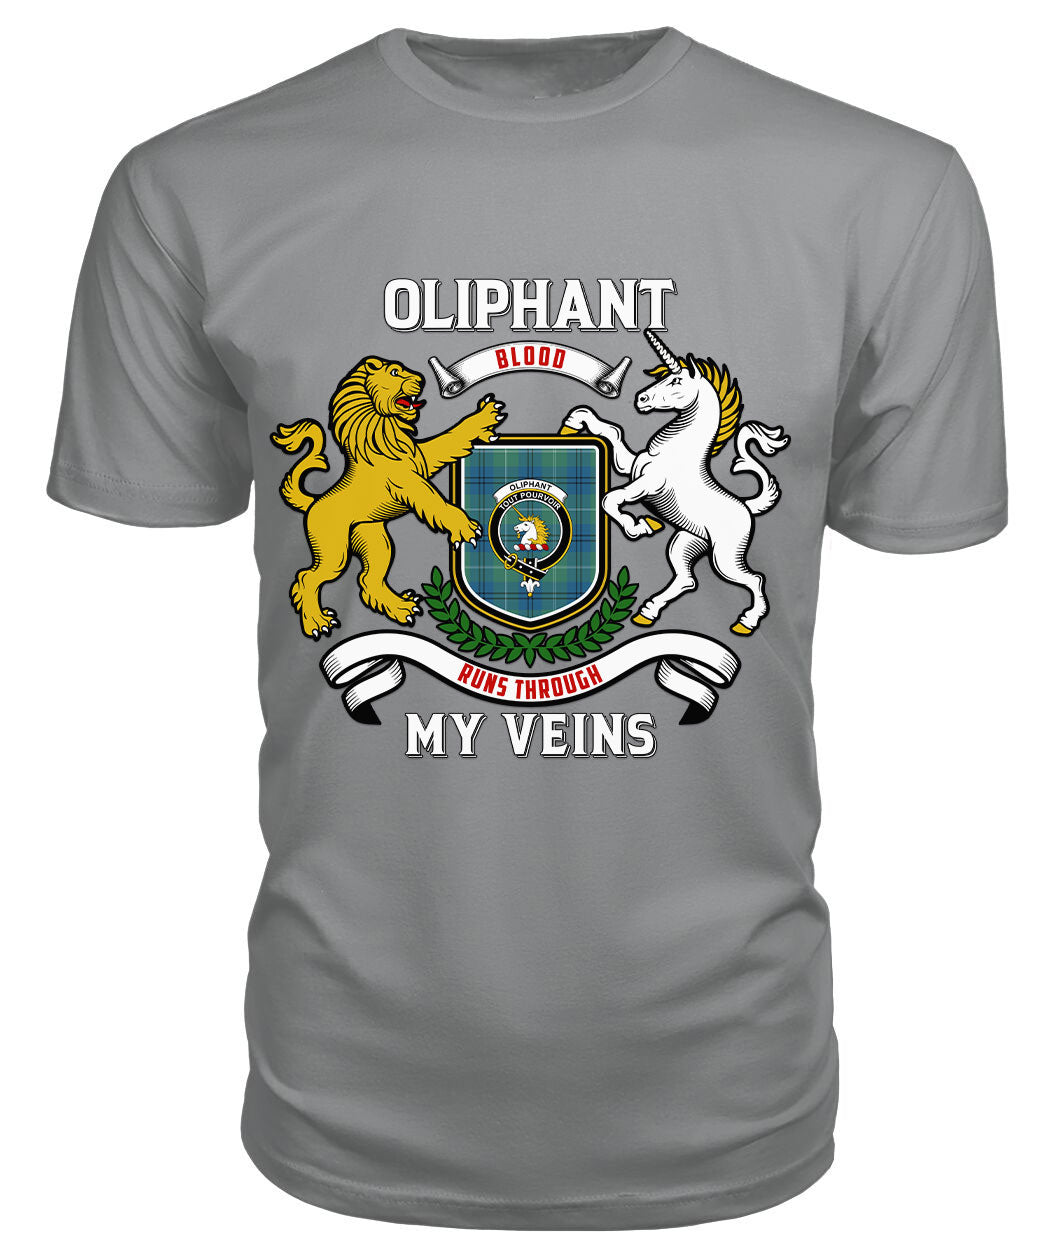 Oliphant Ancient Tartan Crest 2D T-shirt - Blood Runs Through My Veins Style